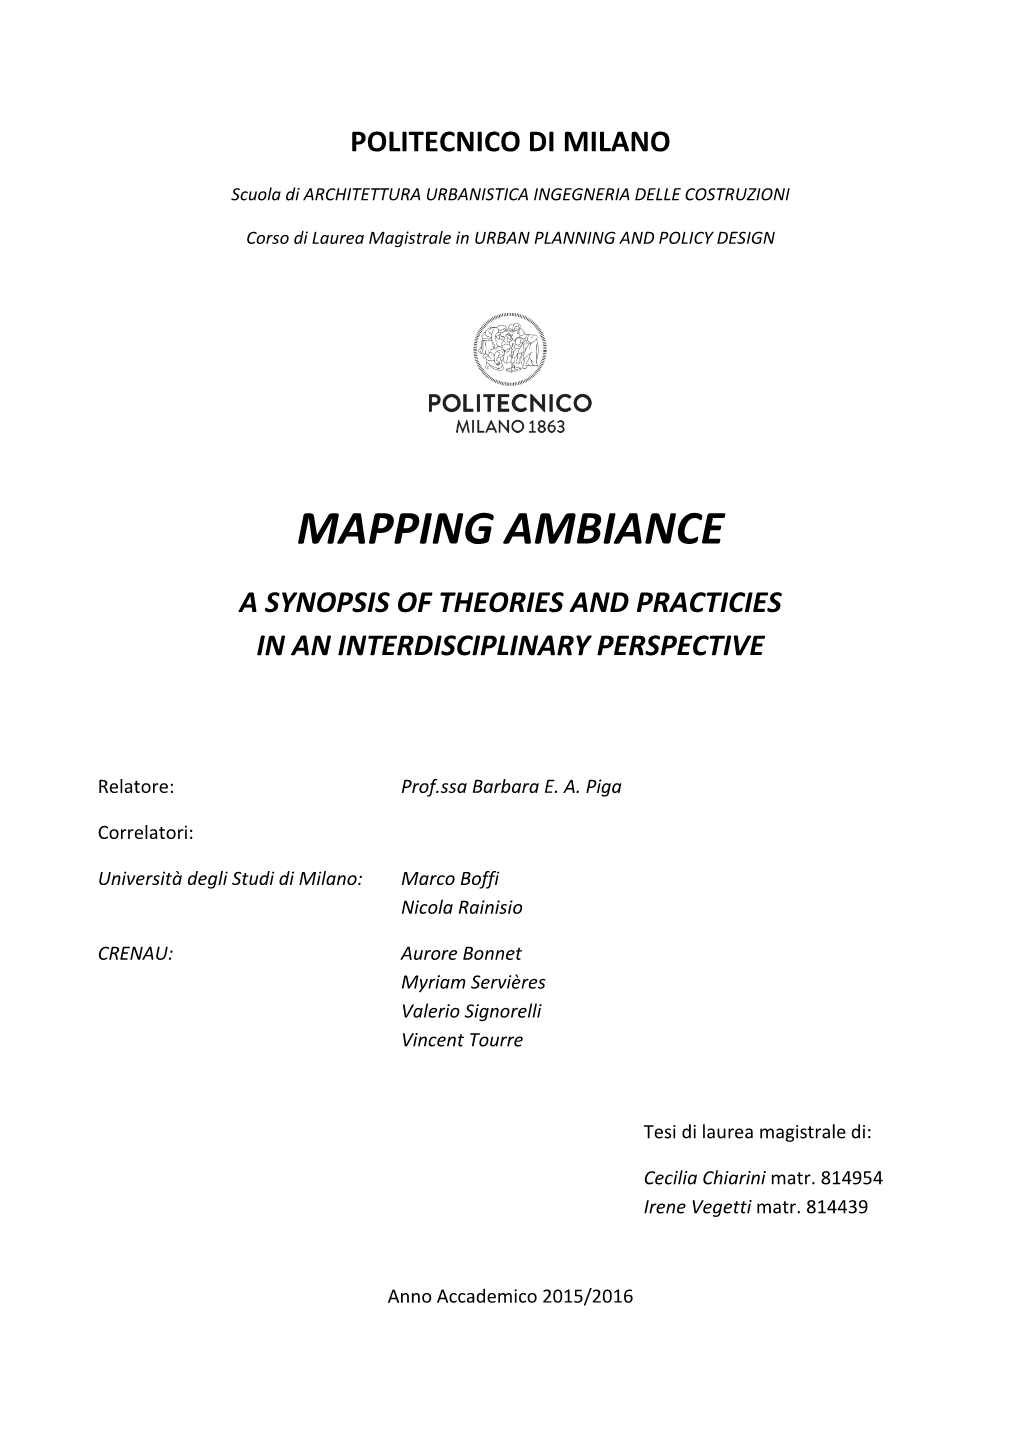 Mapping Ambiance